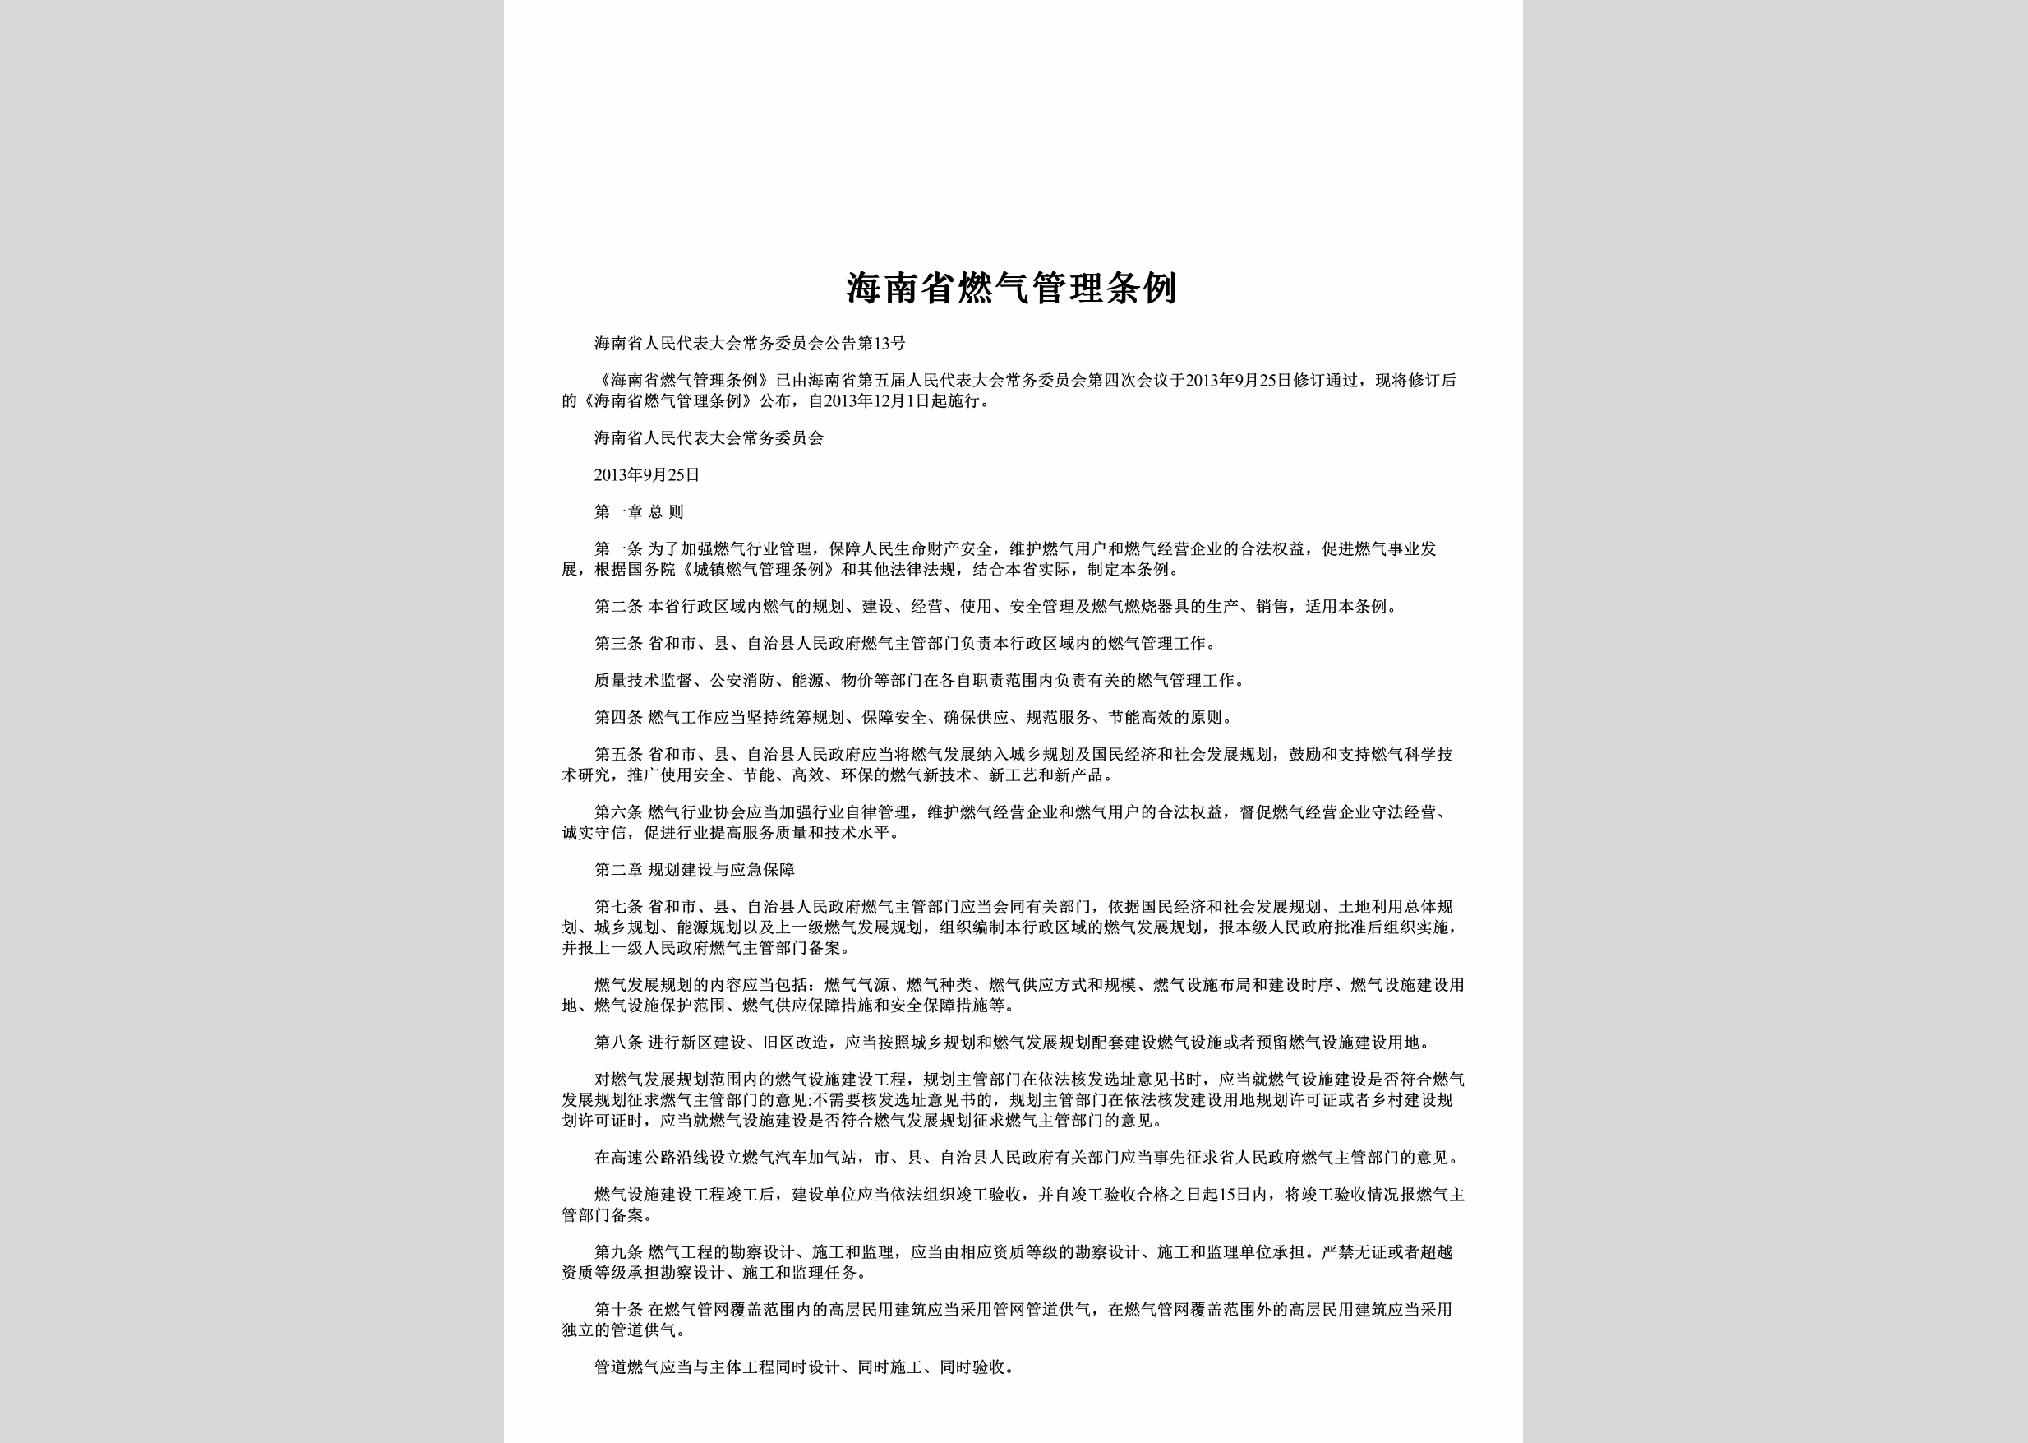 海南省人民代表大会常务委员会公告第13号：海南省燃气管理条例